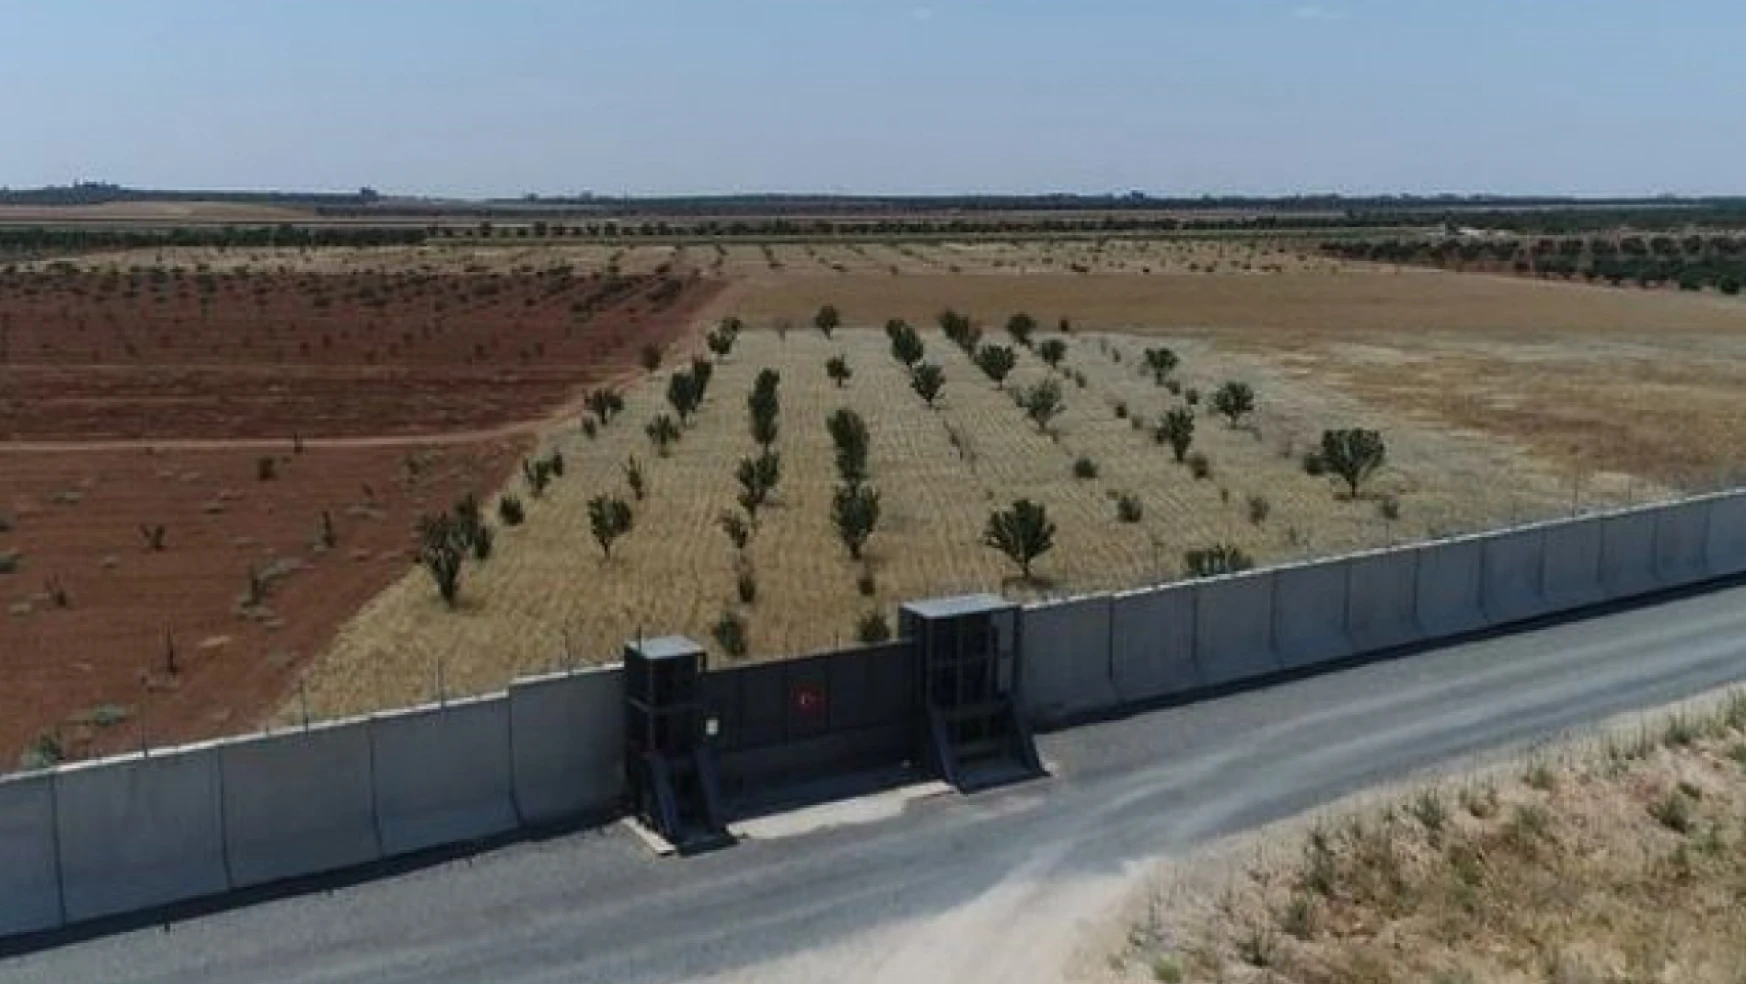 Türkiye sınırında çekildiği iddia edilen görüntüler gerçeği yansıtmıyor